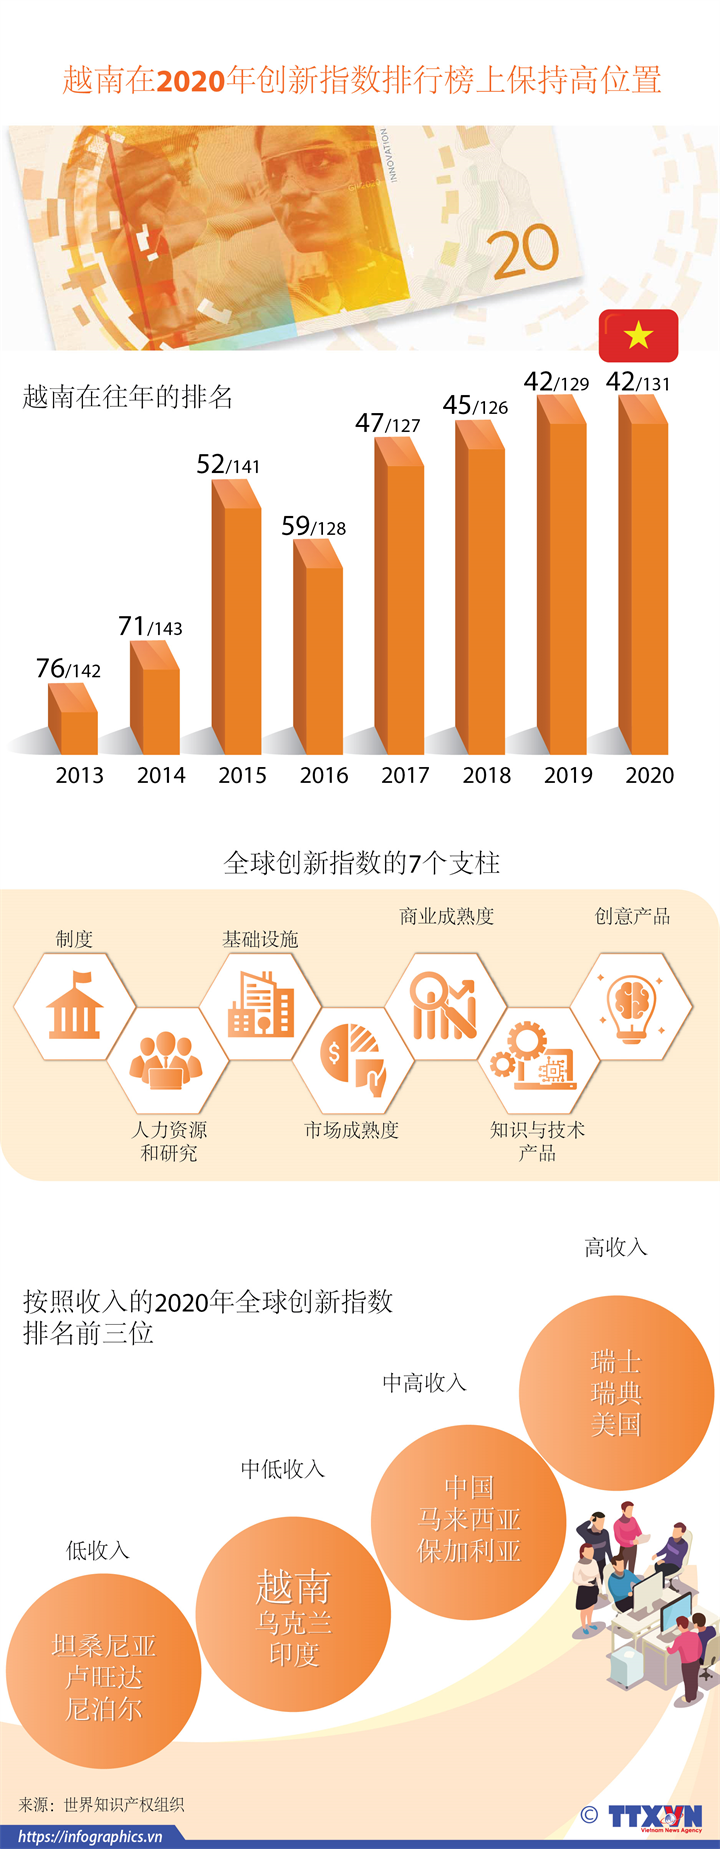 越南在2020年创新指数排行榜上保持高位置